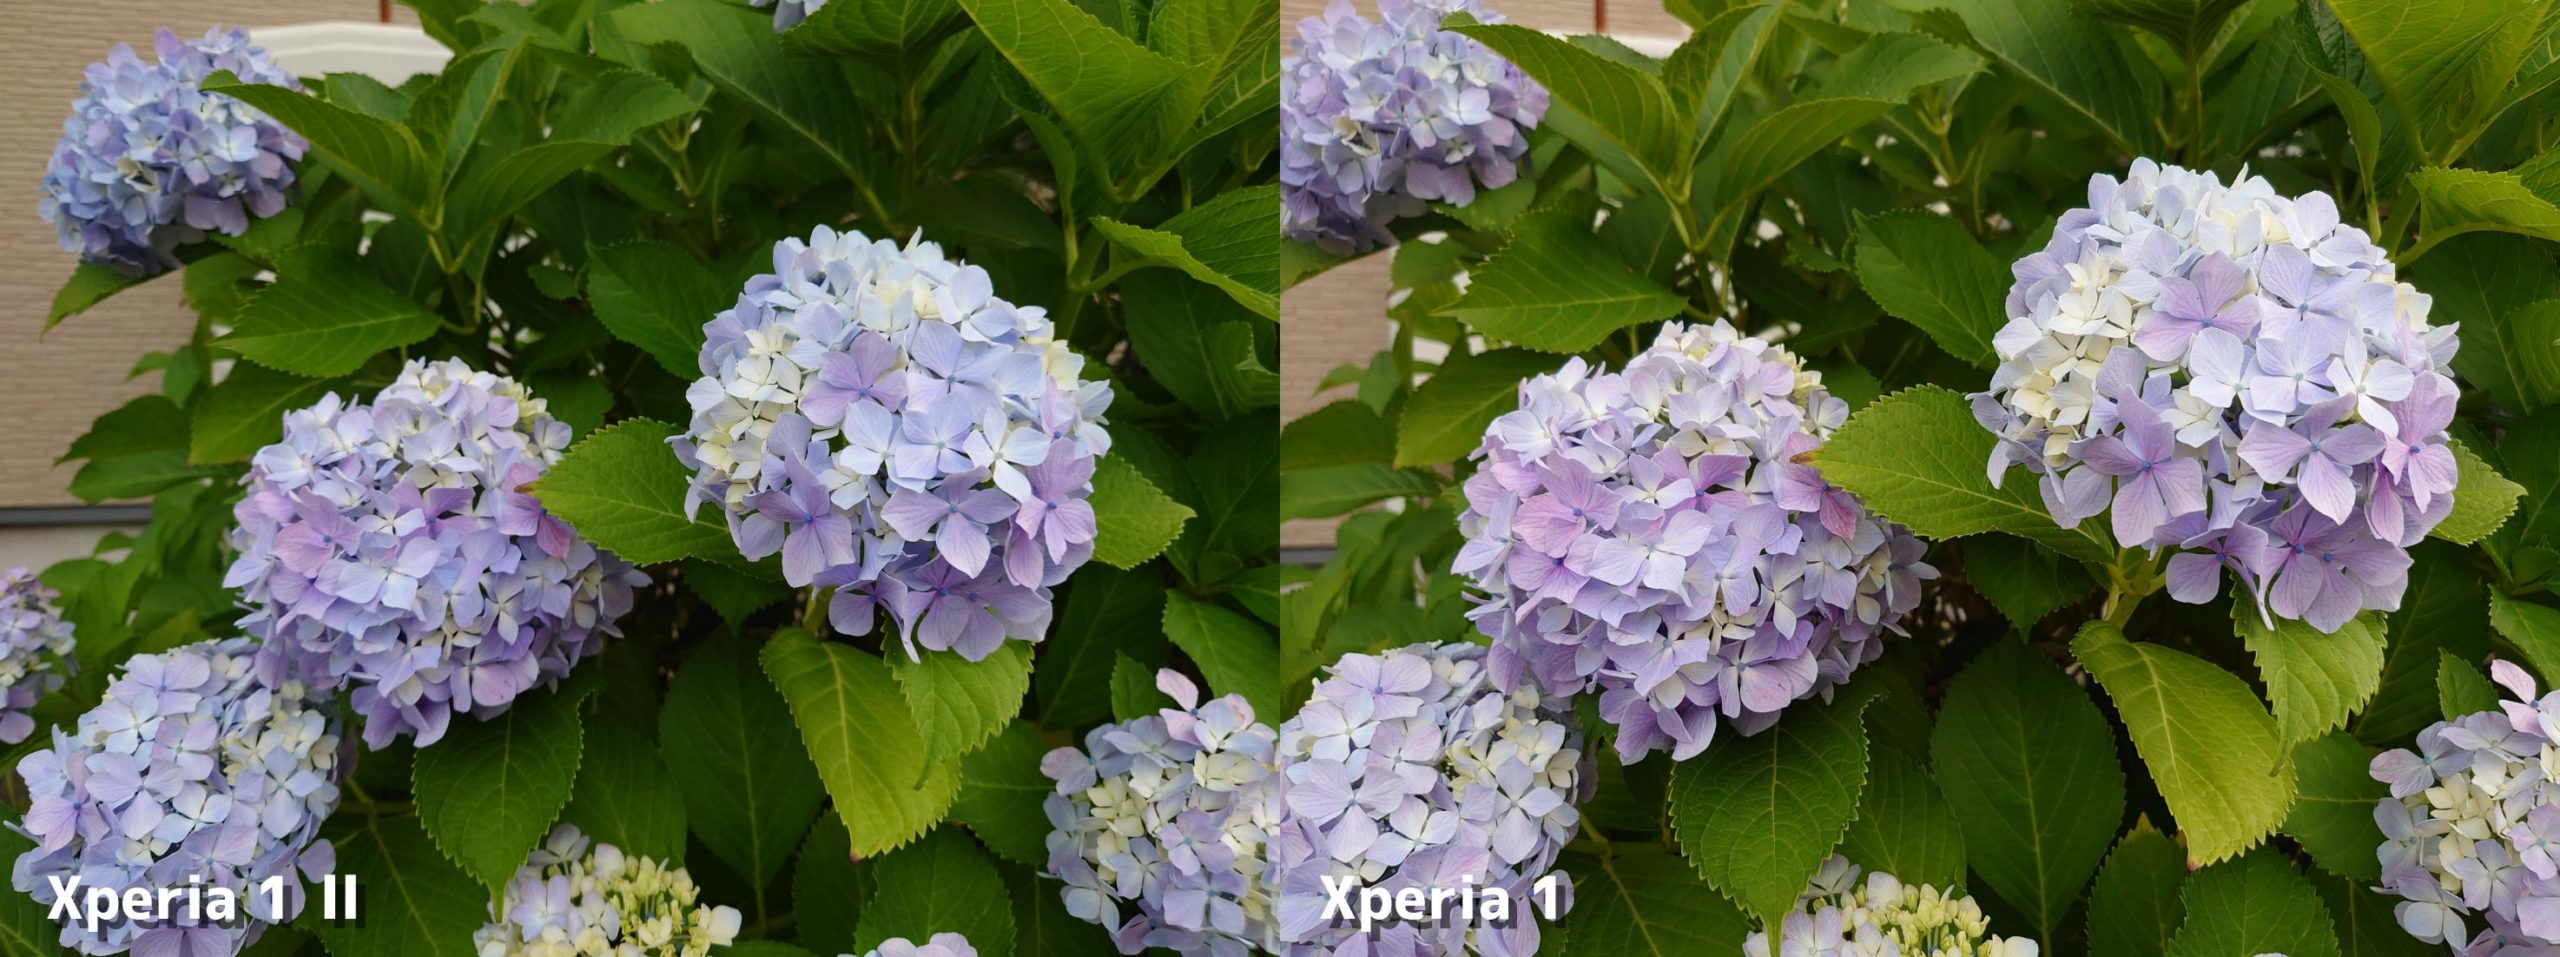 Xperia 1 II・Xperia 1 標準カメラの画質比較（紫陽花）